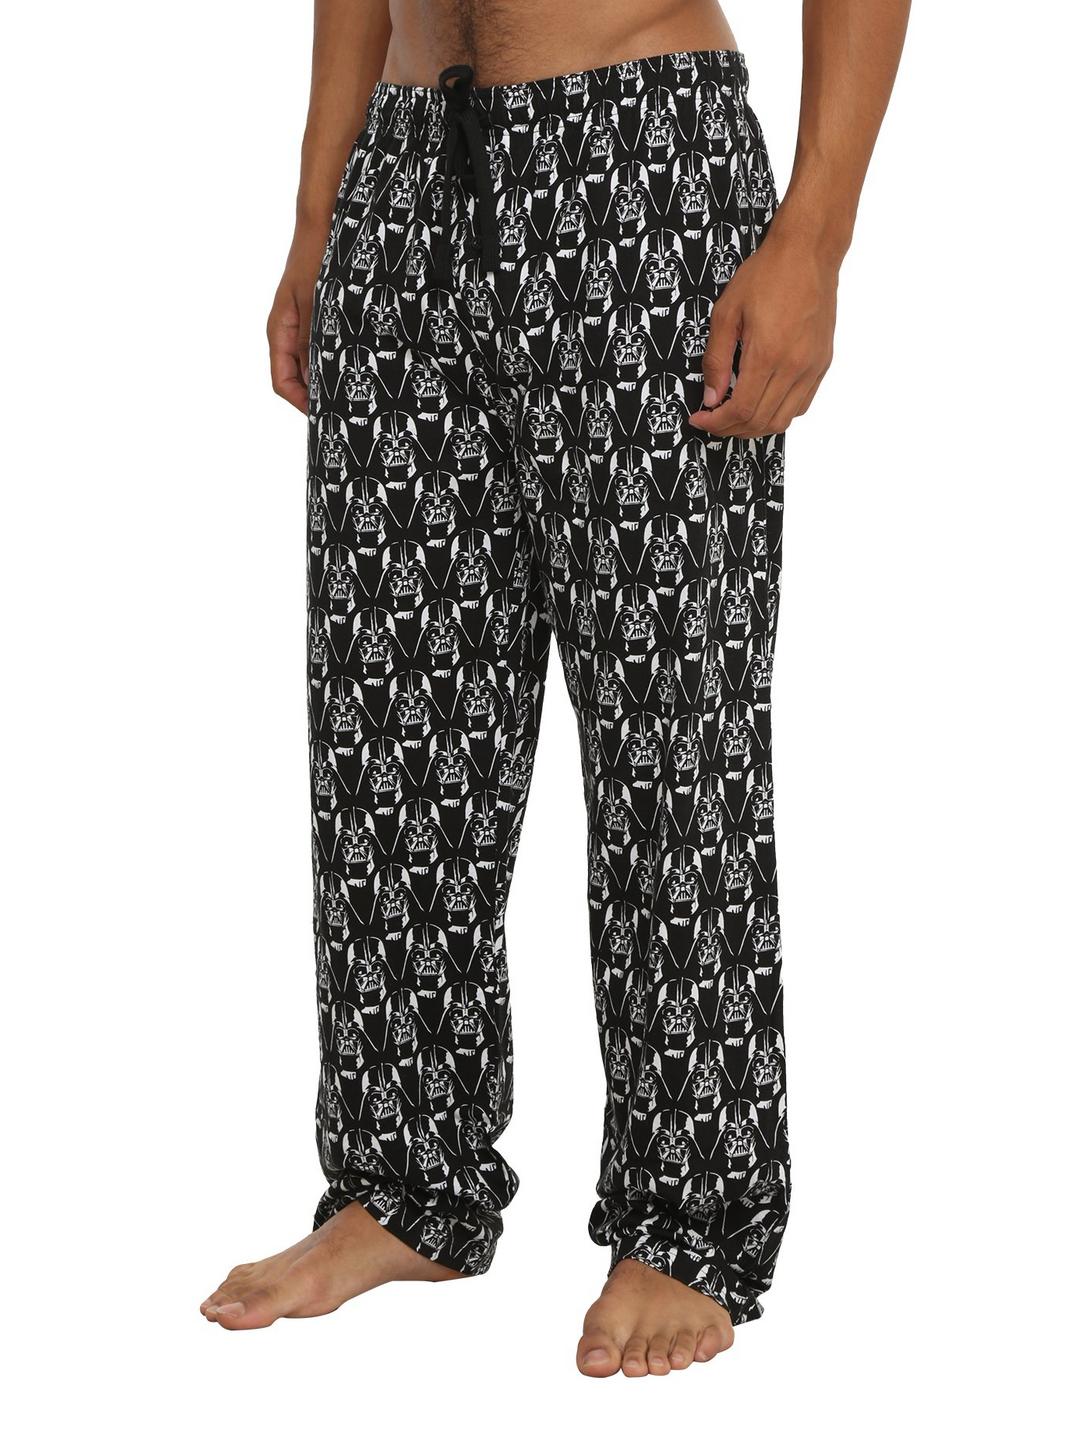 Star Wars Darth Vader Print Guys Pajama Pants, BLACK, hi-res